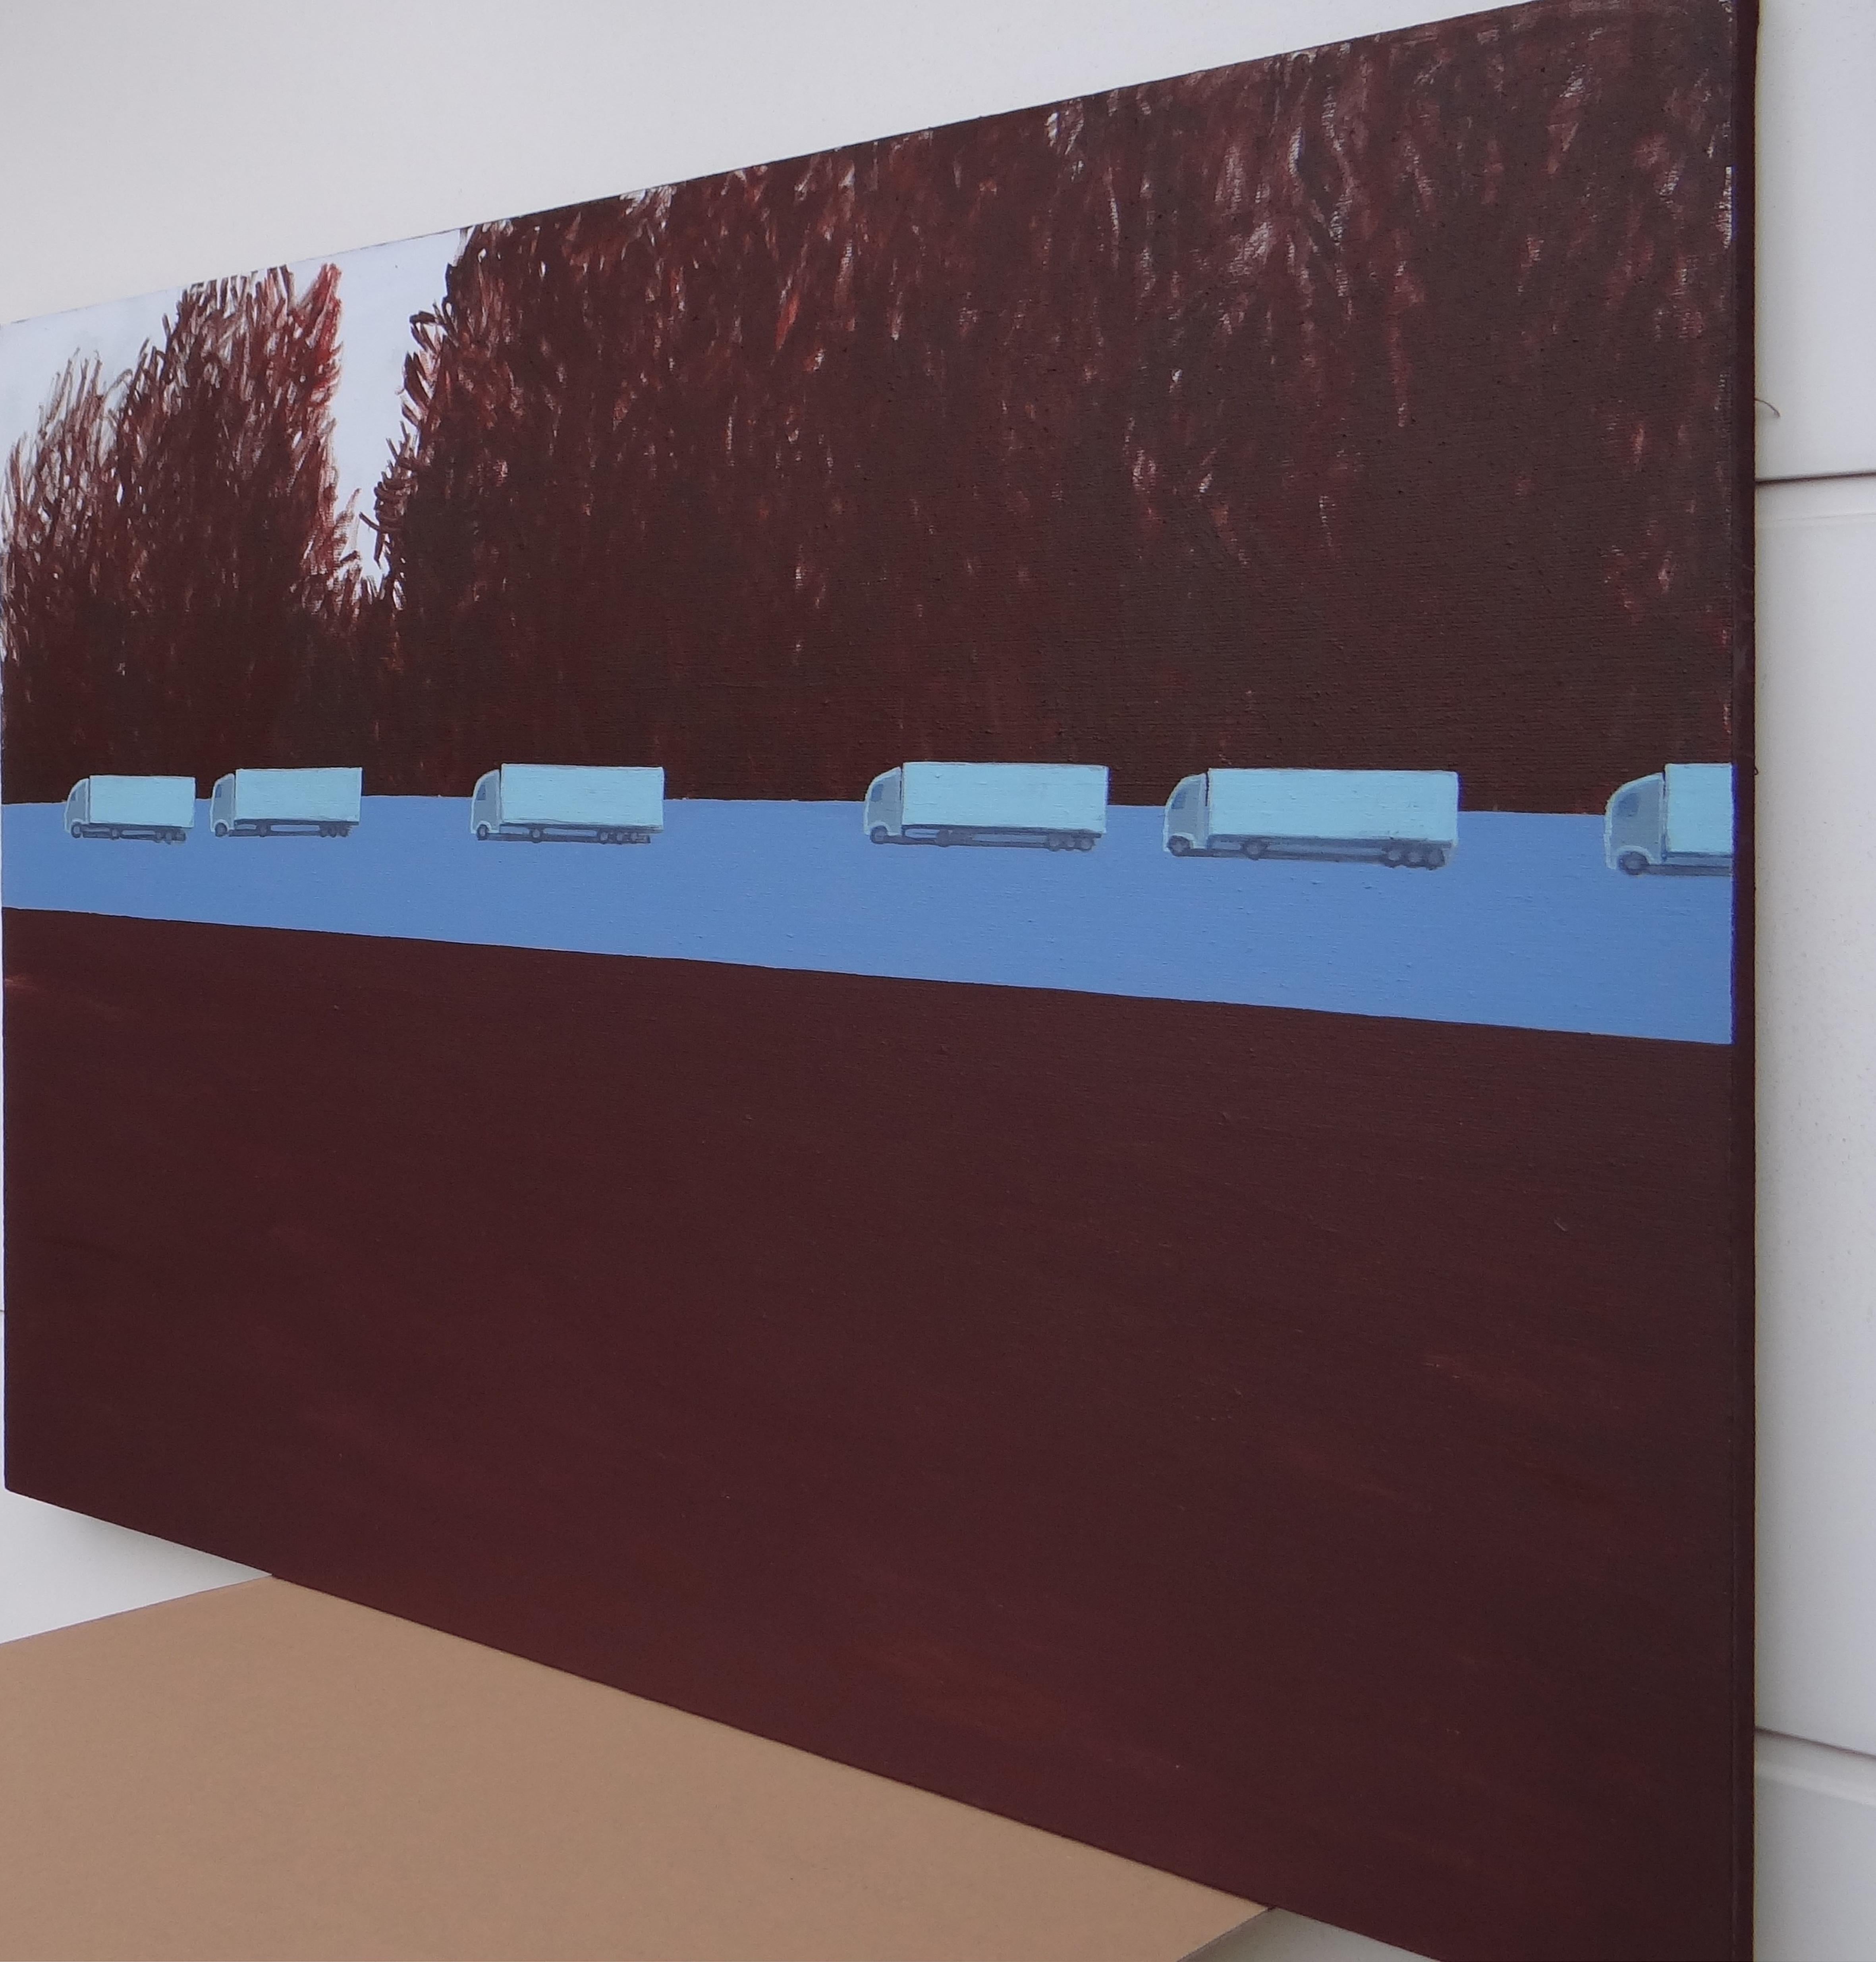 Colonne de camions 1 - Peinture expressive contemporaine de paysage, avenue des arbres - Contemporain Painting par Joanna Mrozowska